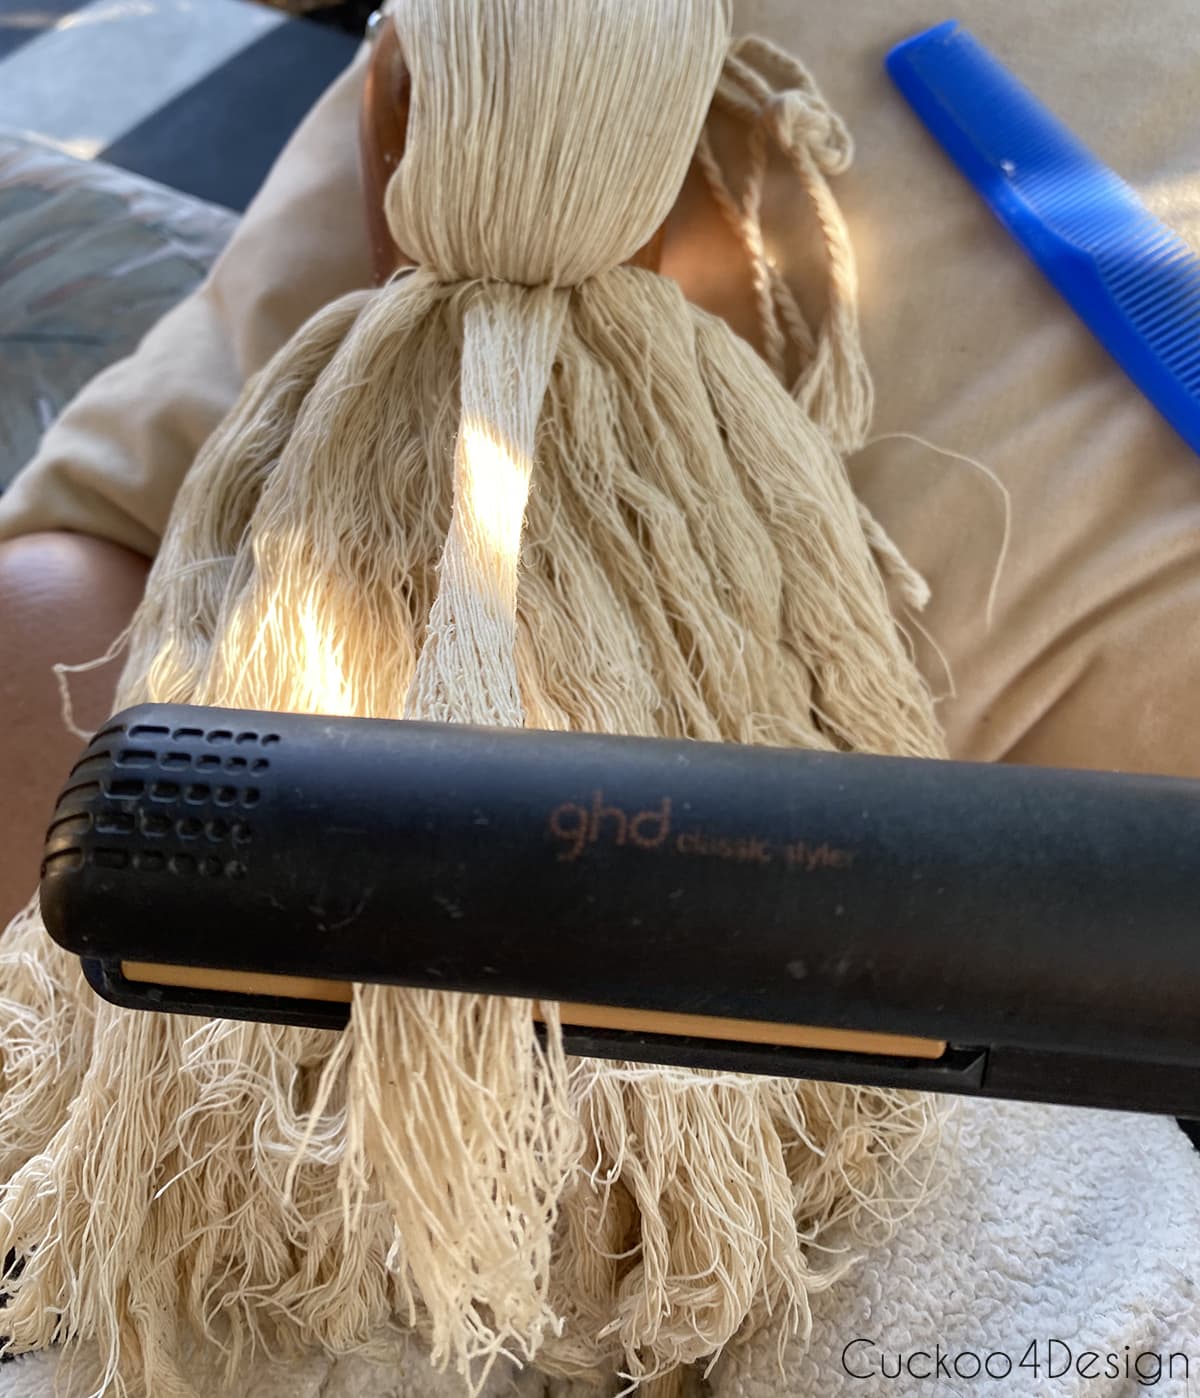 straightening macrame yarn with hair straightener